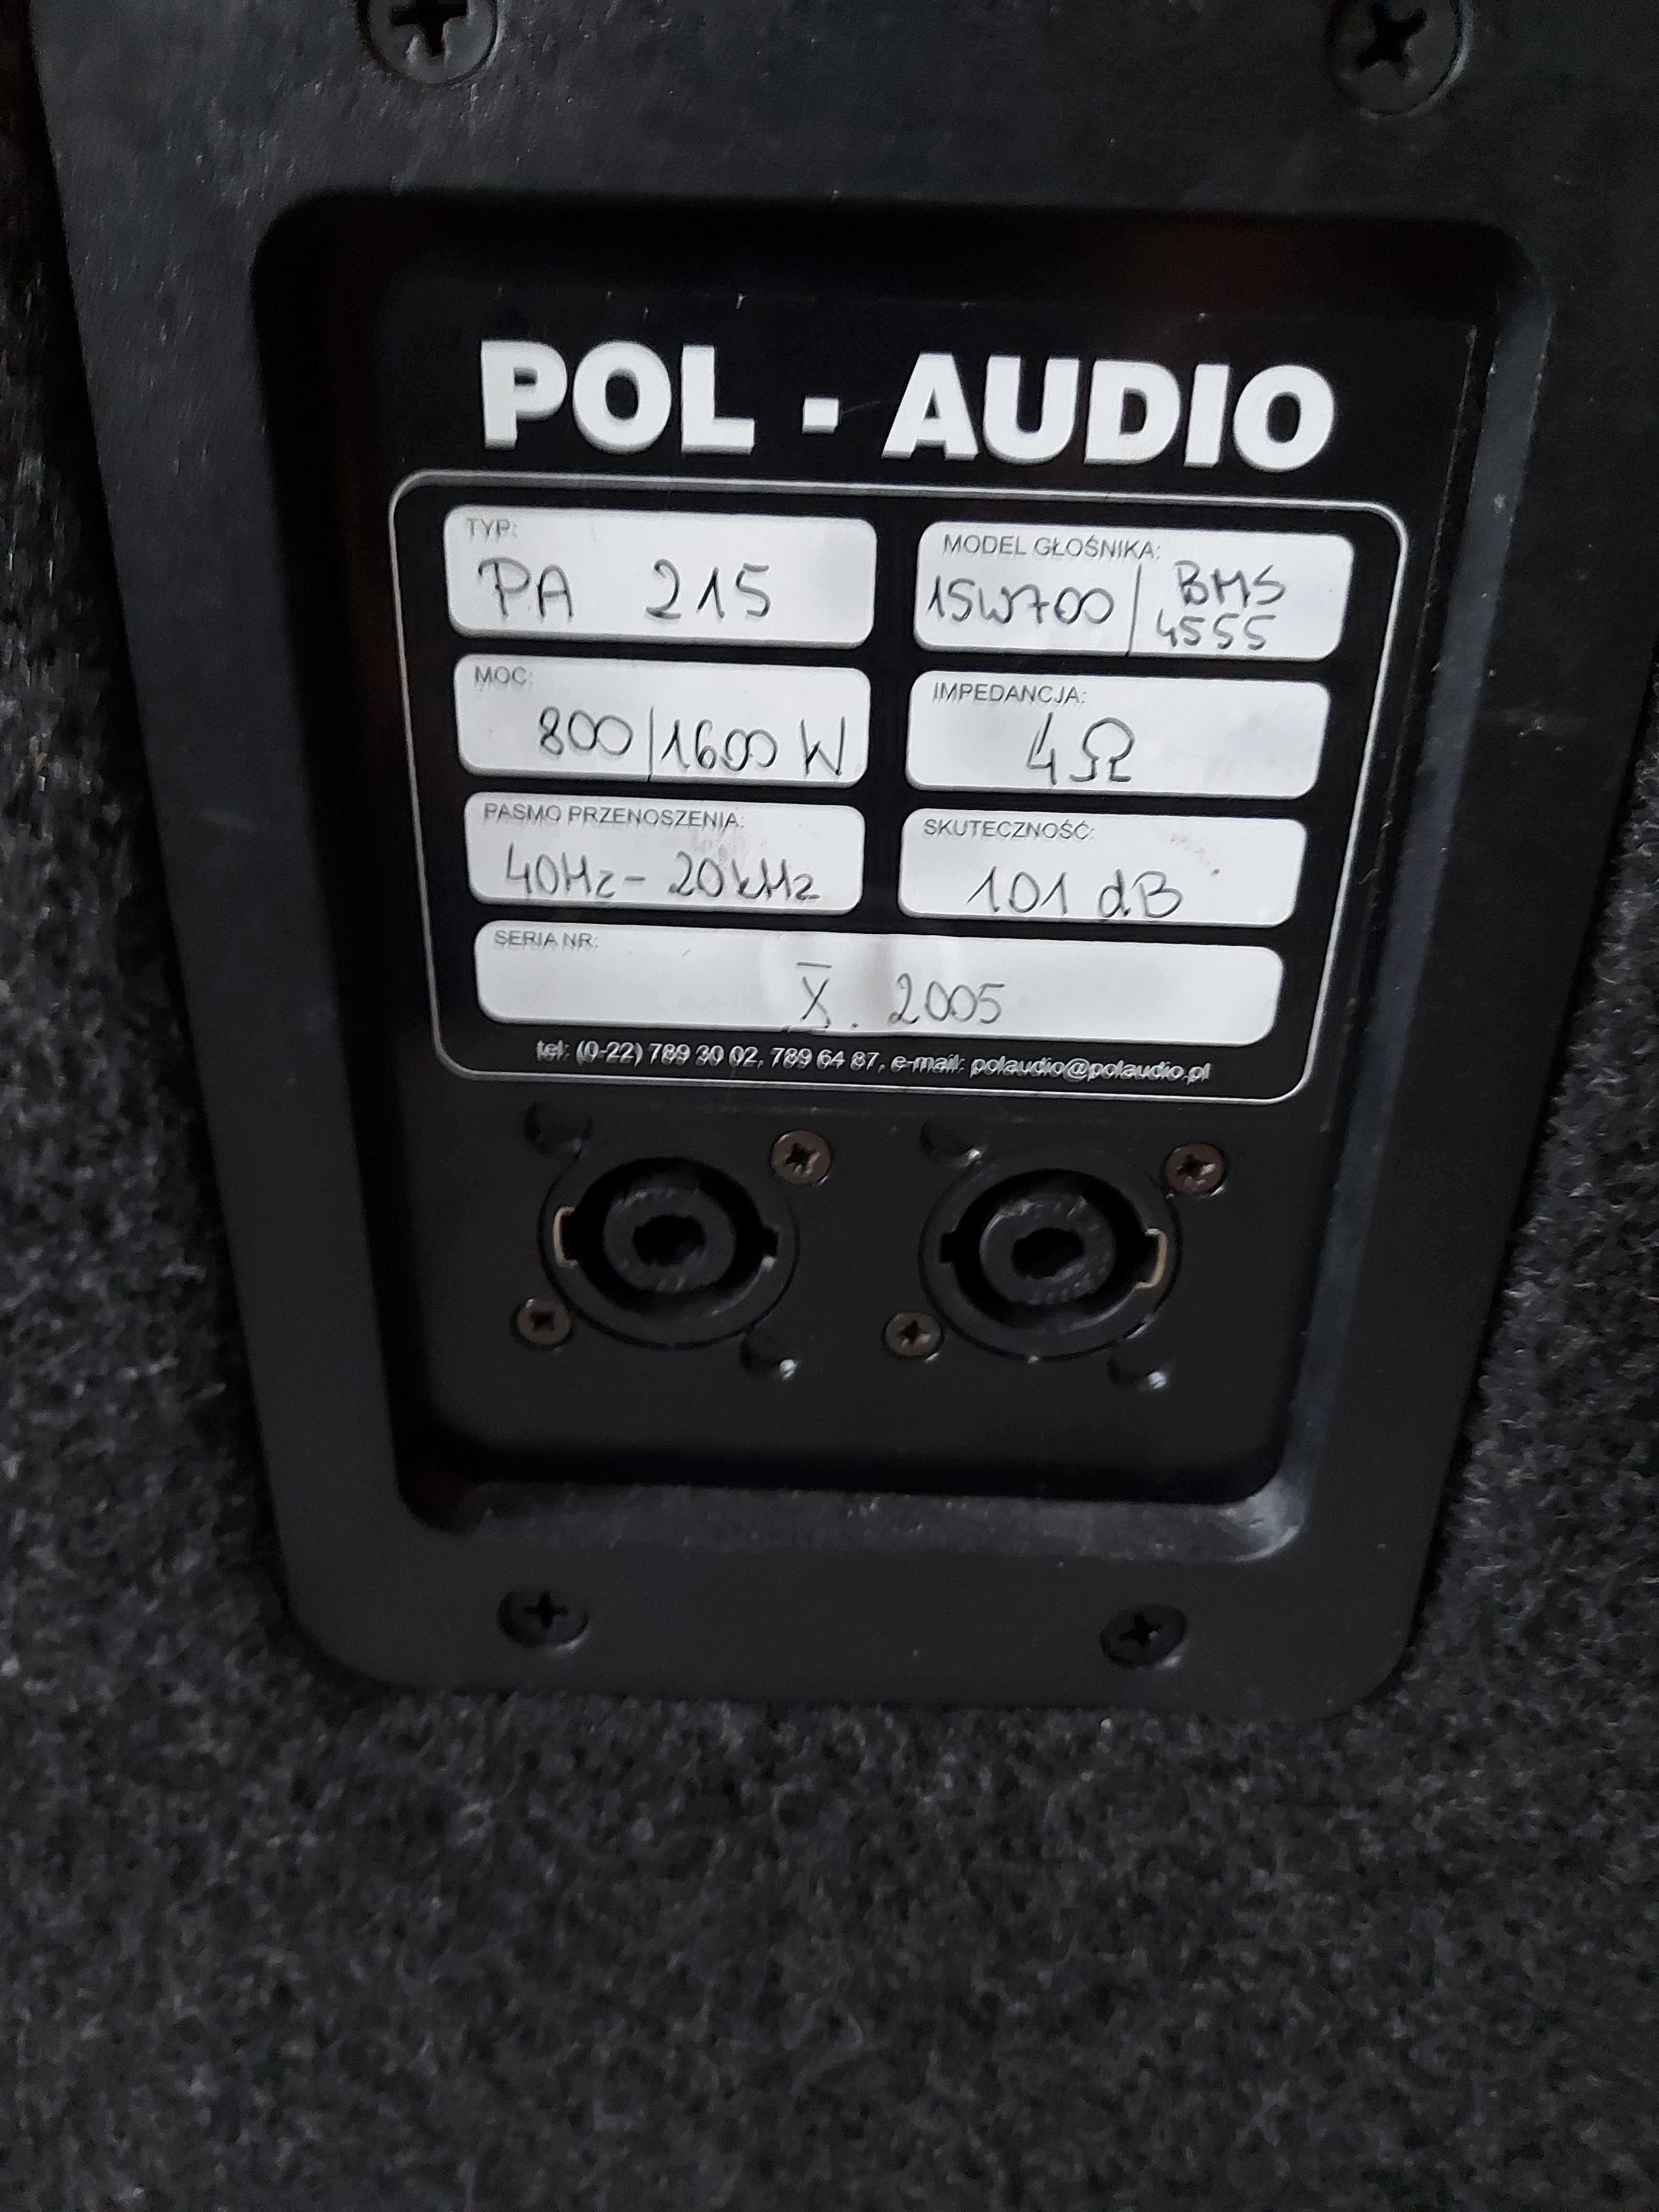 Kolumny estradowe Pol Audio POL AUDIO SAT Pa215 BMS 15W700 BMS 4555